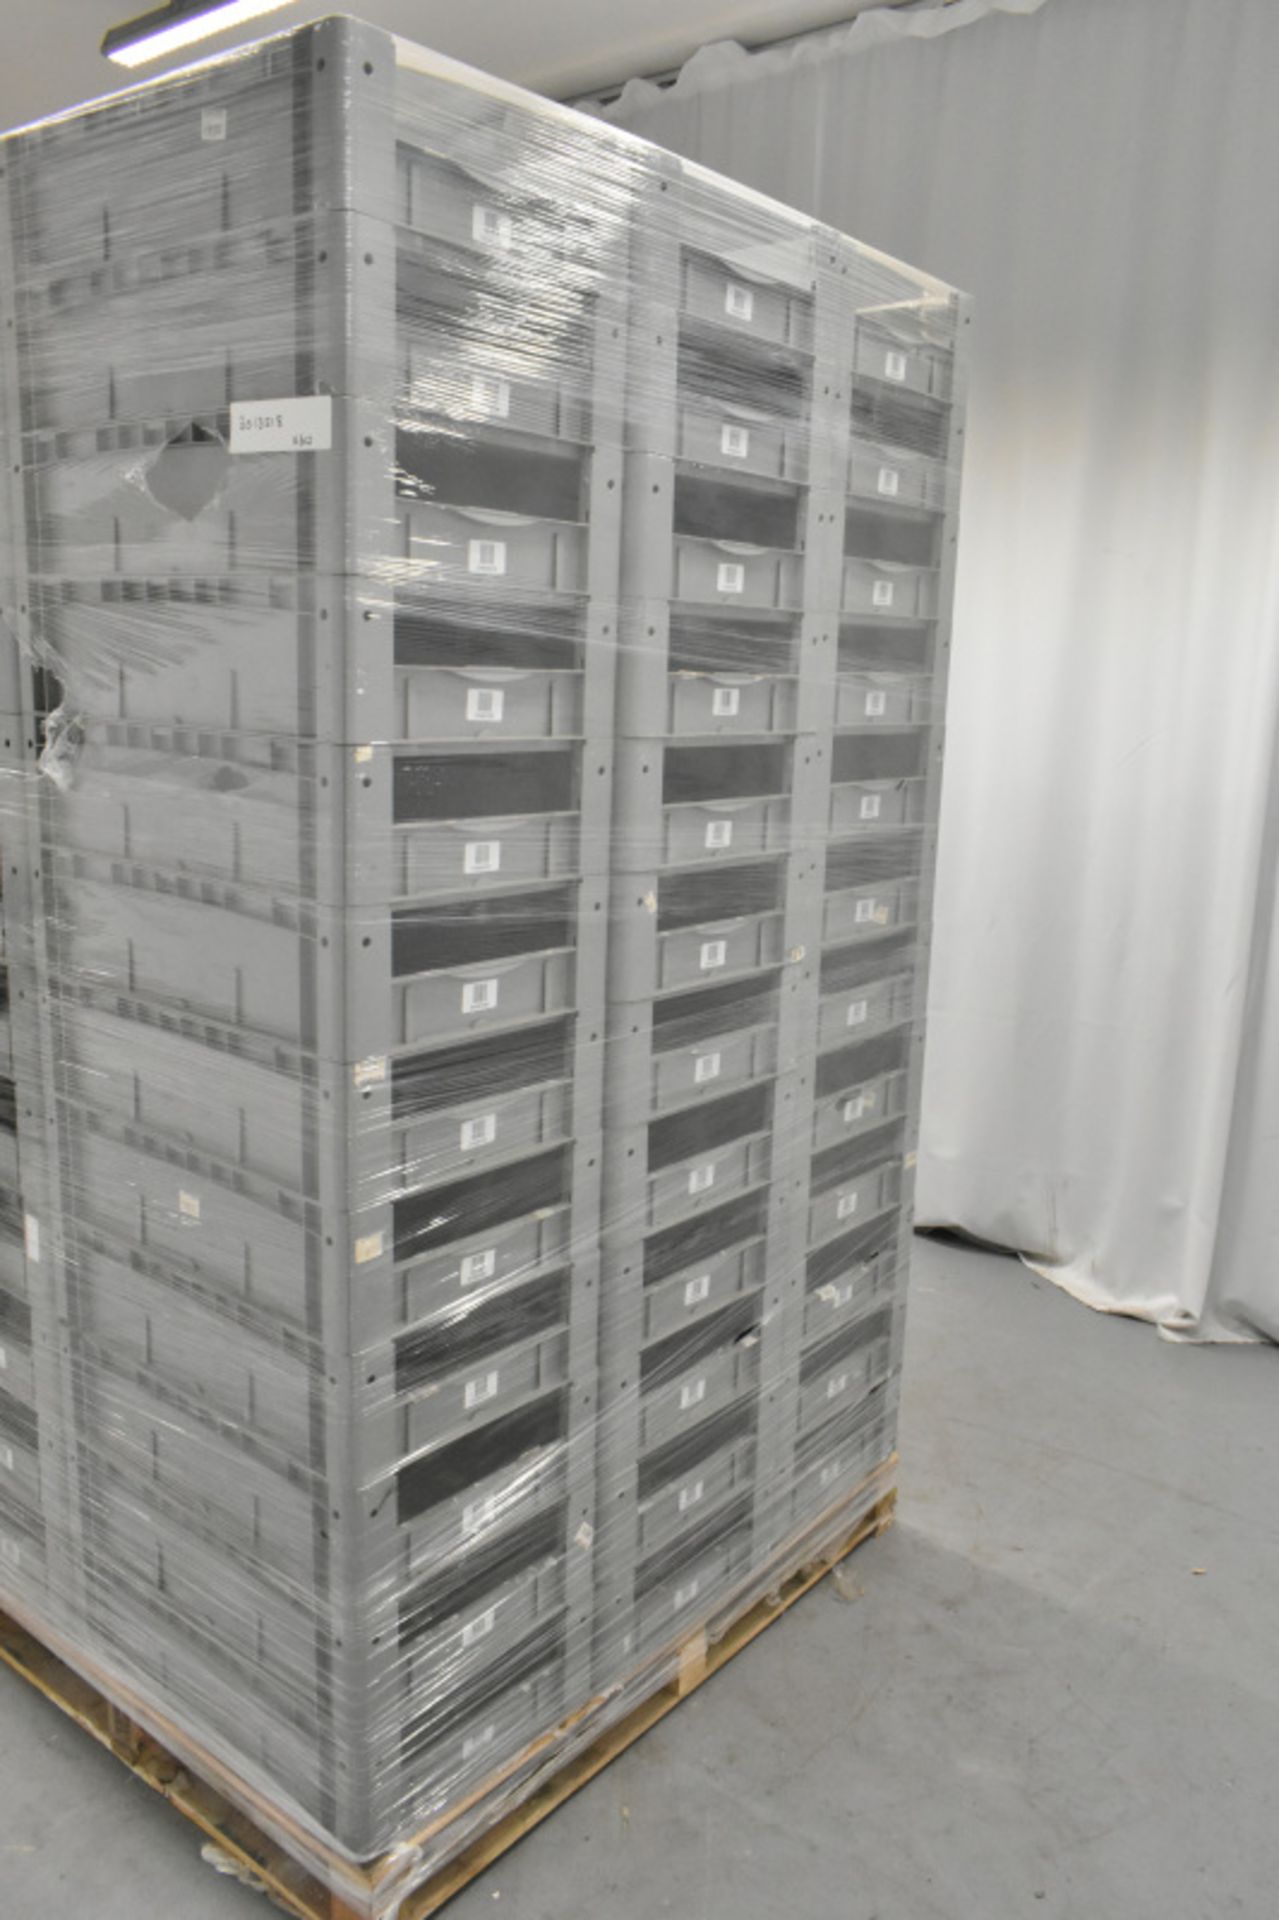 60x Tote Storage Boxes - L600 x W400 x H150mm - Image 3 of 4